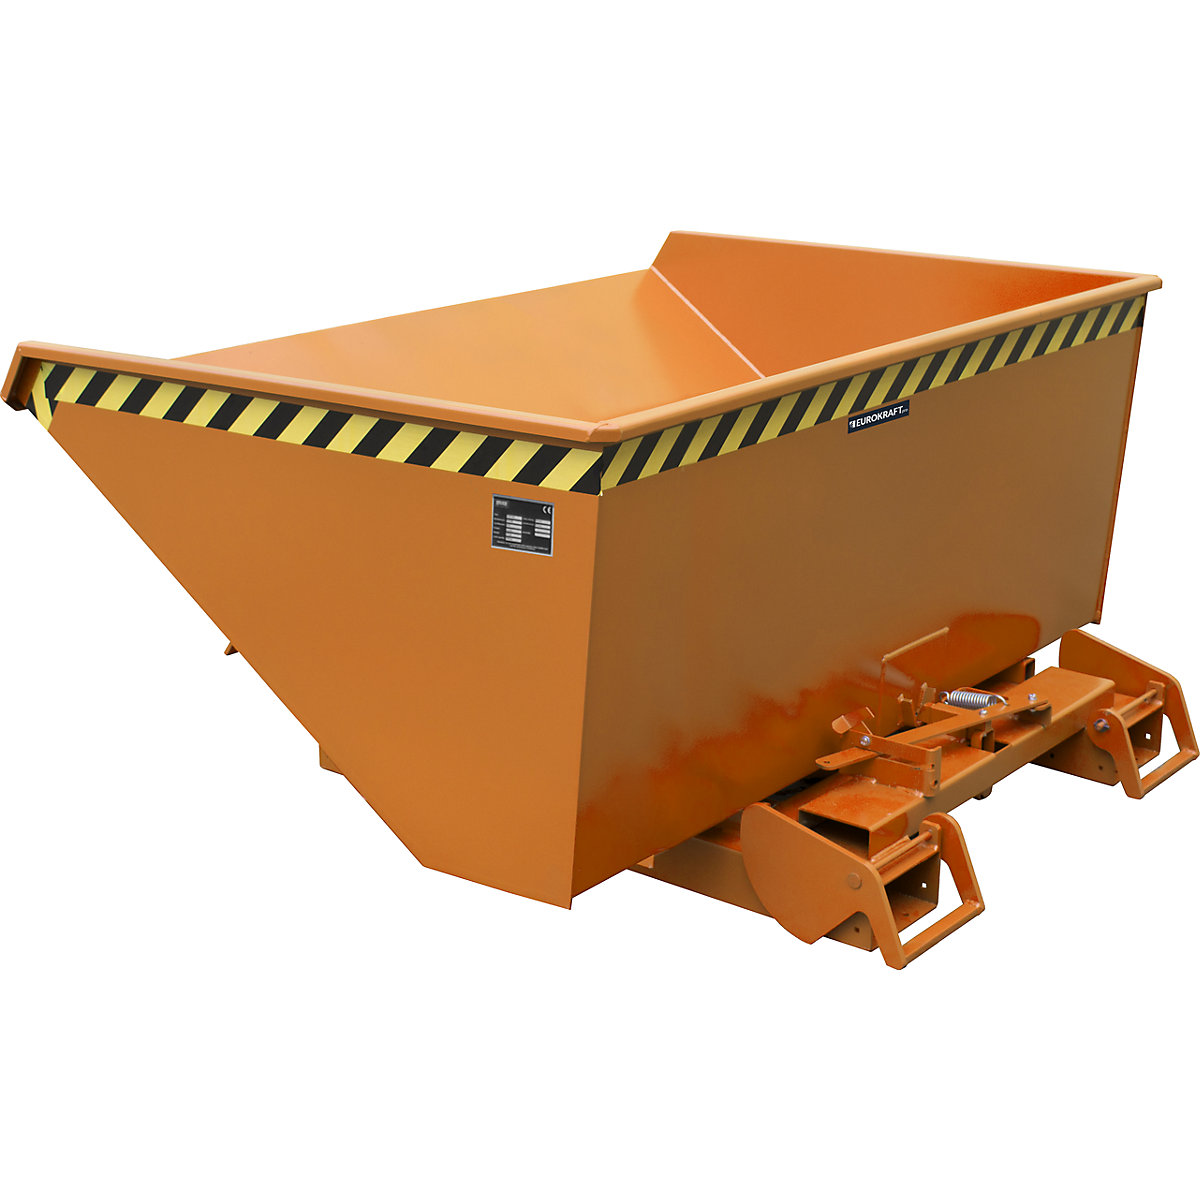 EUROKRAFTpro – Automatický vyklápěcí přepravník, objem 0,9 m³, oranžová RAL 2000